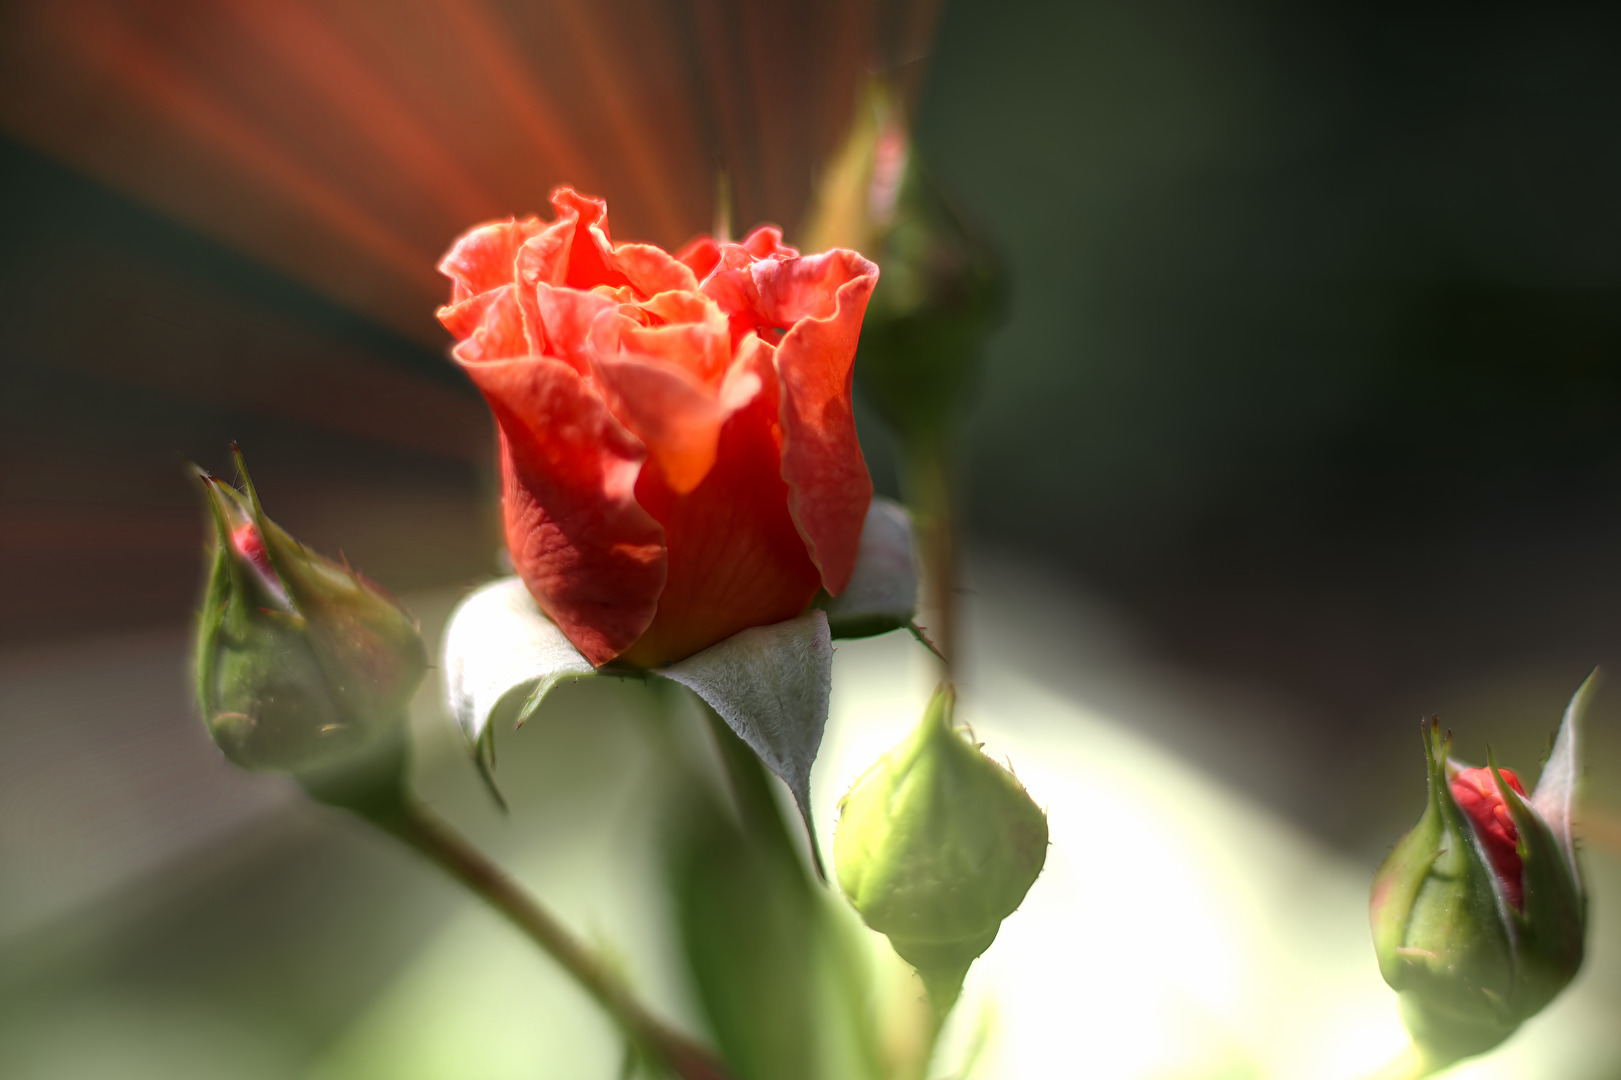 Eine Rose geht auf. Einfach schöne Momente die man in seinem Herzen in Erinnerung behalten sollte.